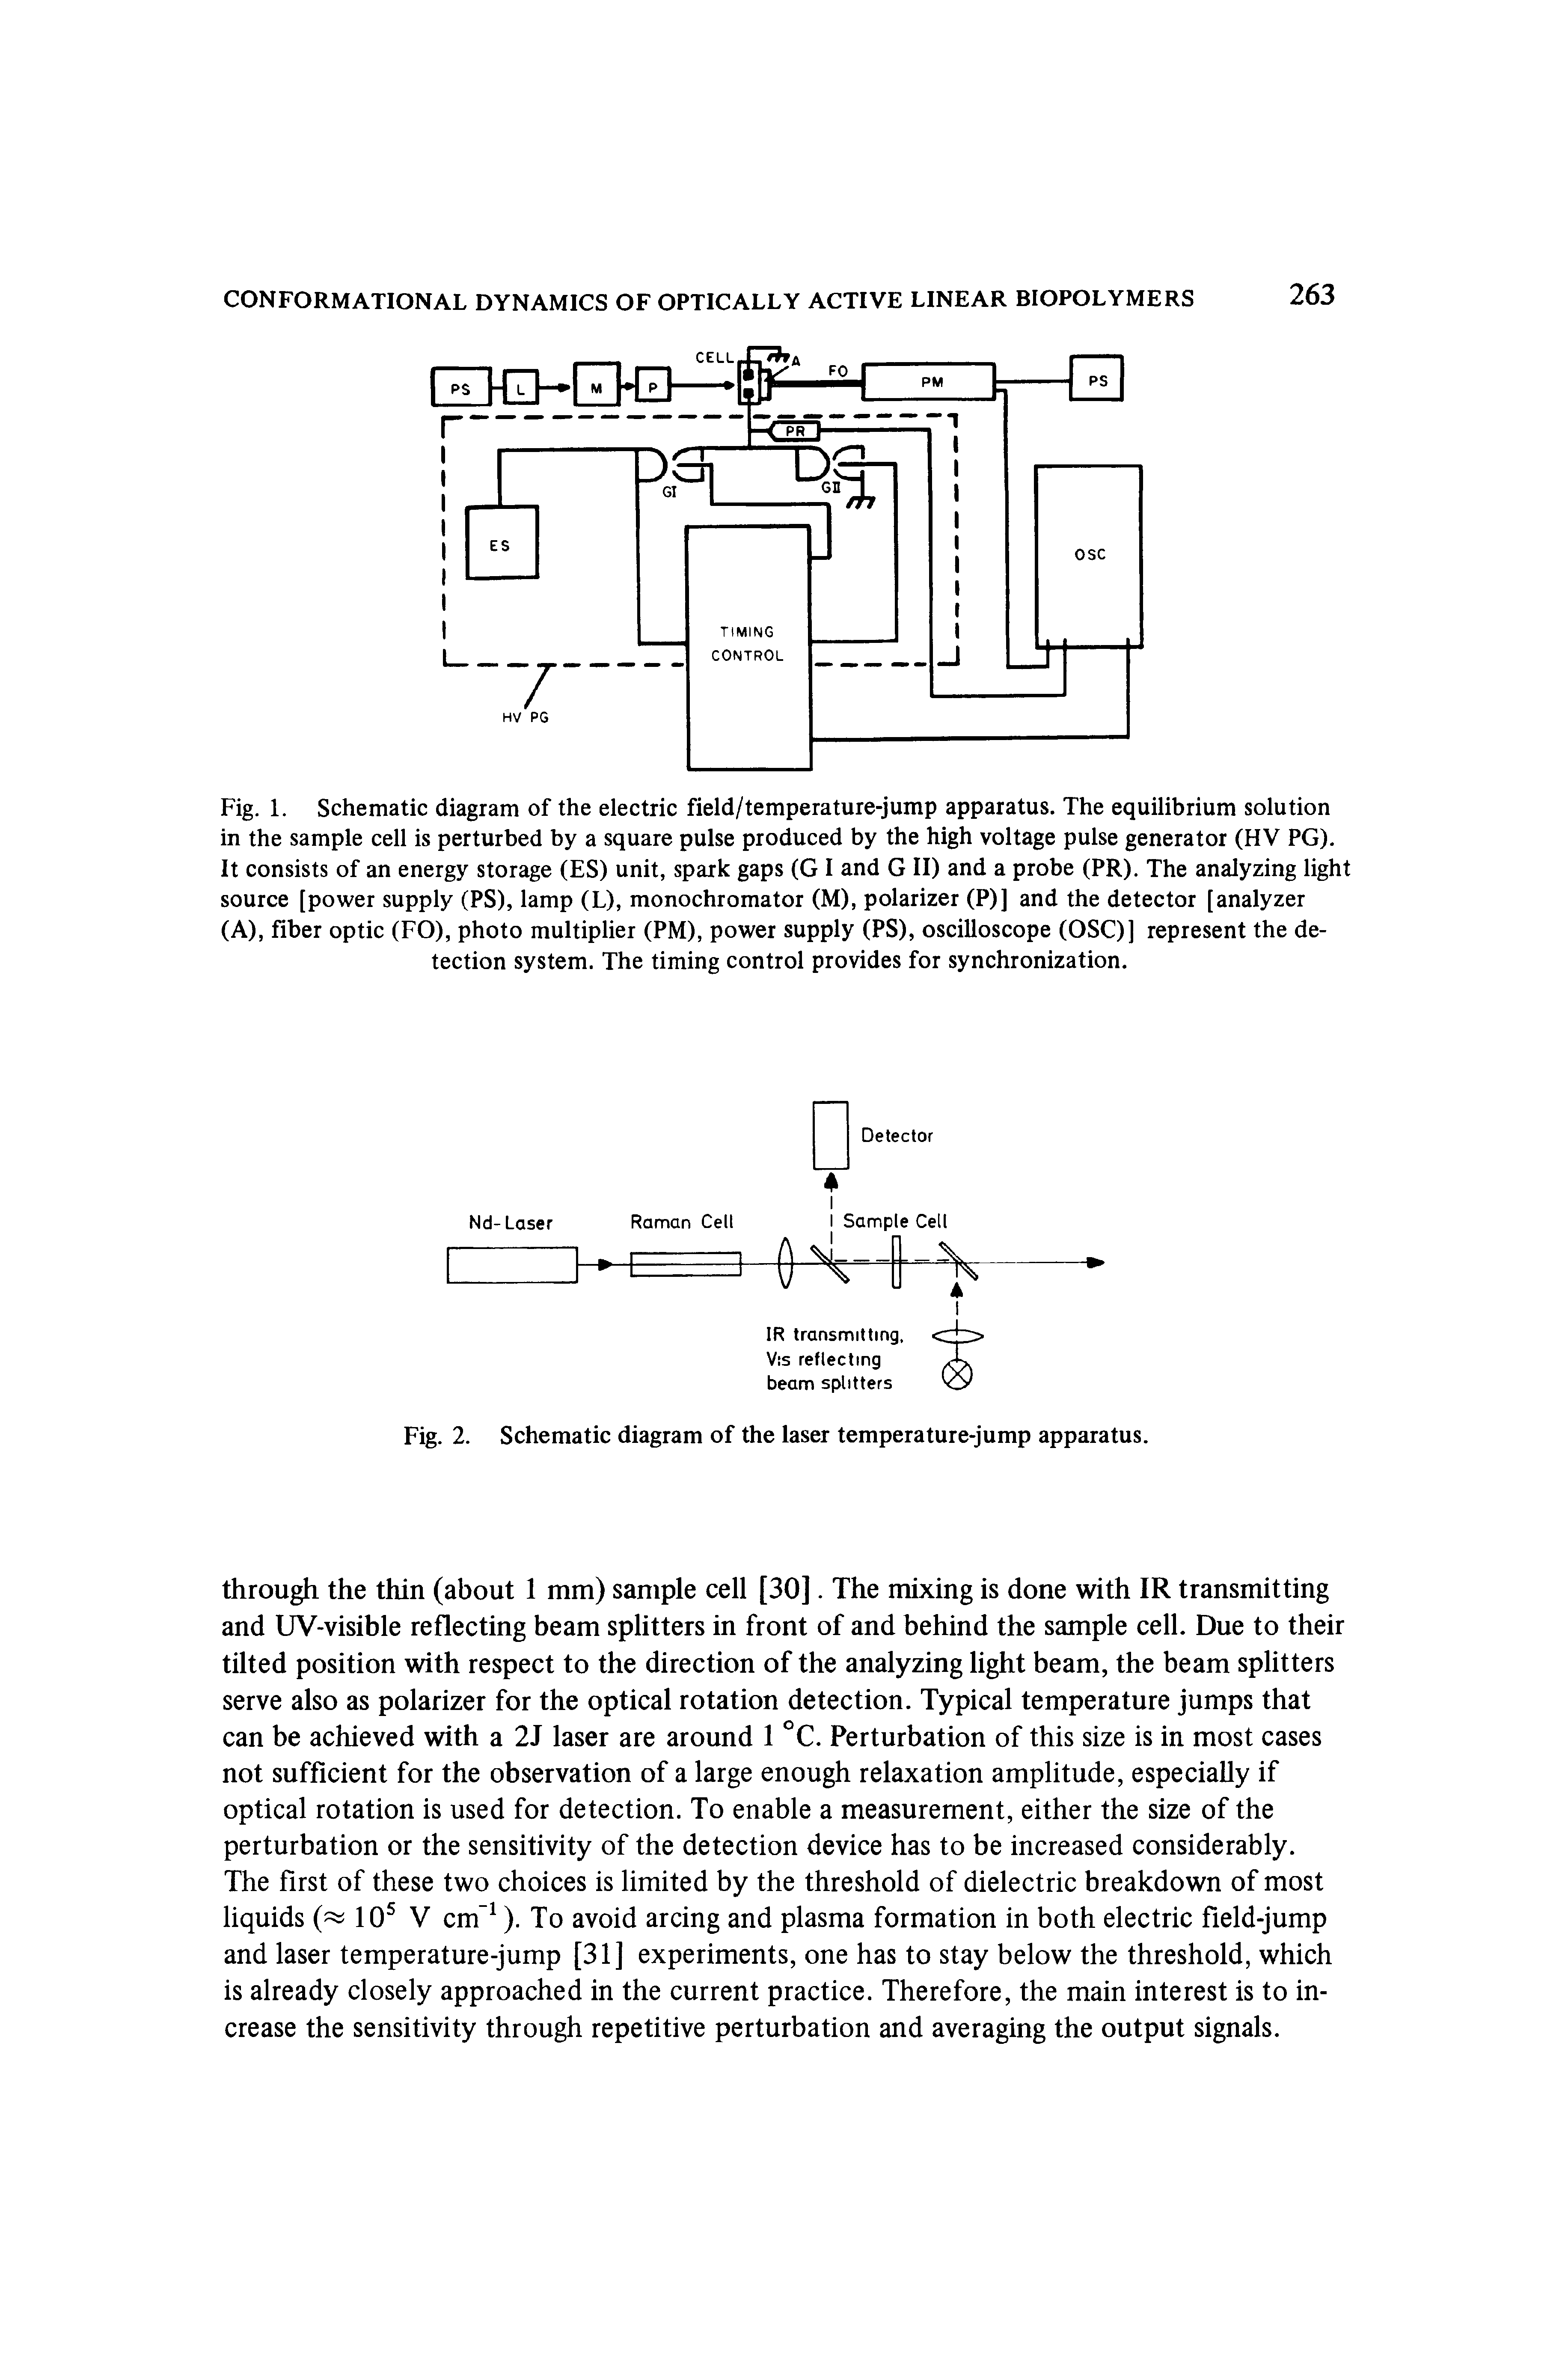 Fig. 2. Schematic diagram of the laser temperature-jump apparatus.